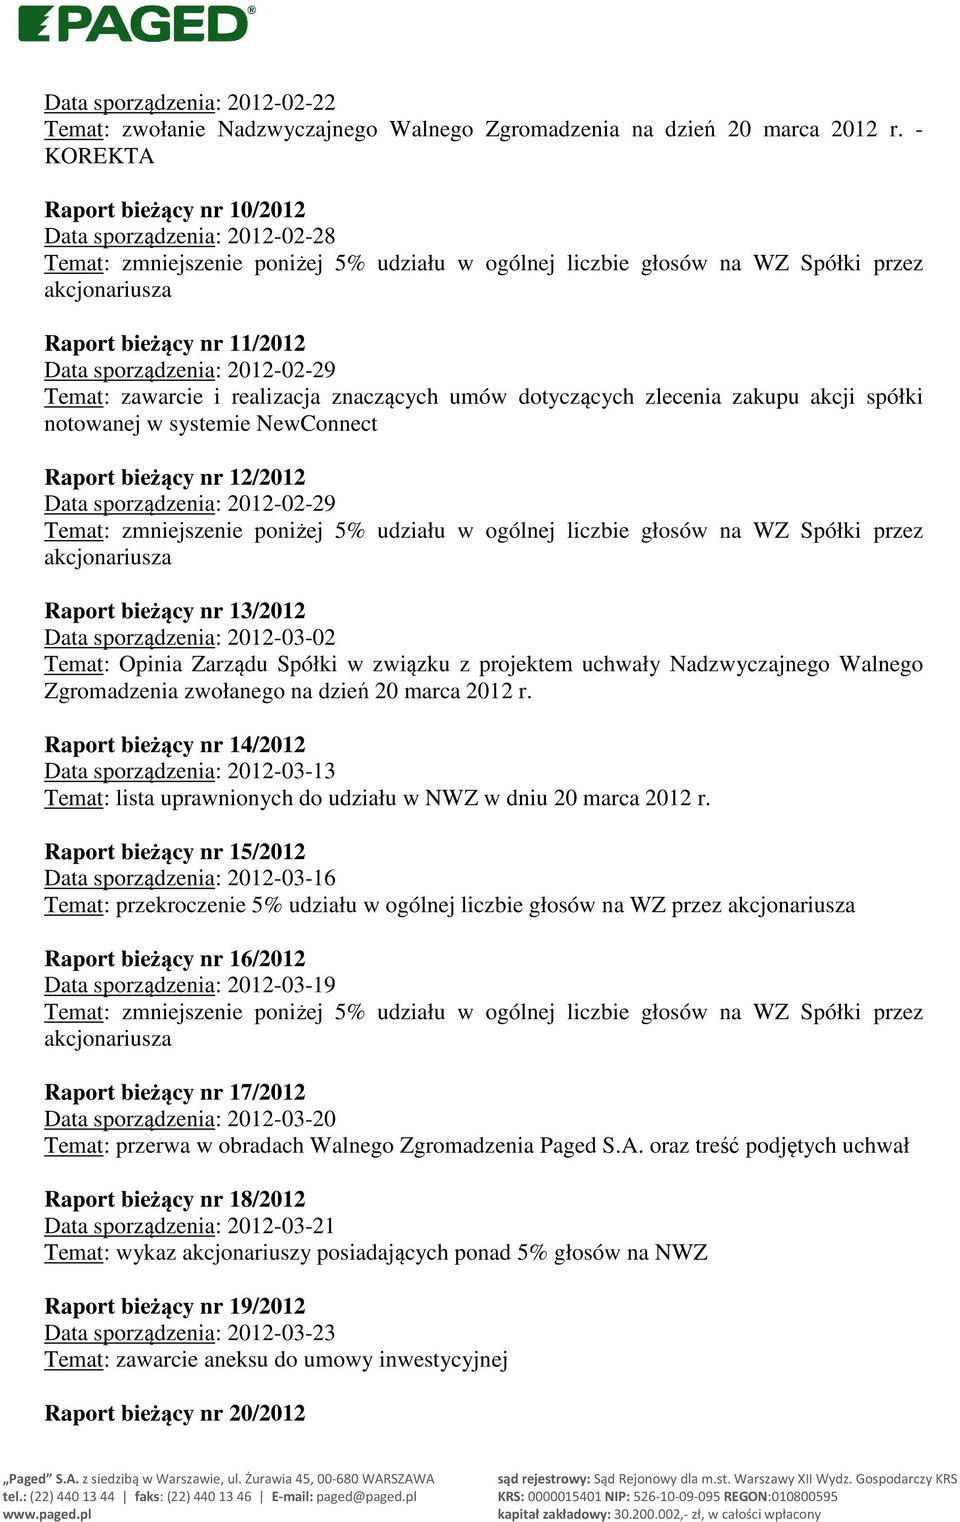 2012-02-29 Temat: zawarcie i realizacja znaczących umów dotyczących zlecenia zakupu akcji spółki notowanej w systemie NewConnect Raport bieżący nr 12/2012 Data sporządzenia: 2012-02-29 Temat: